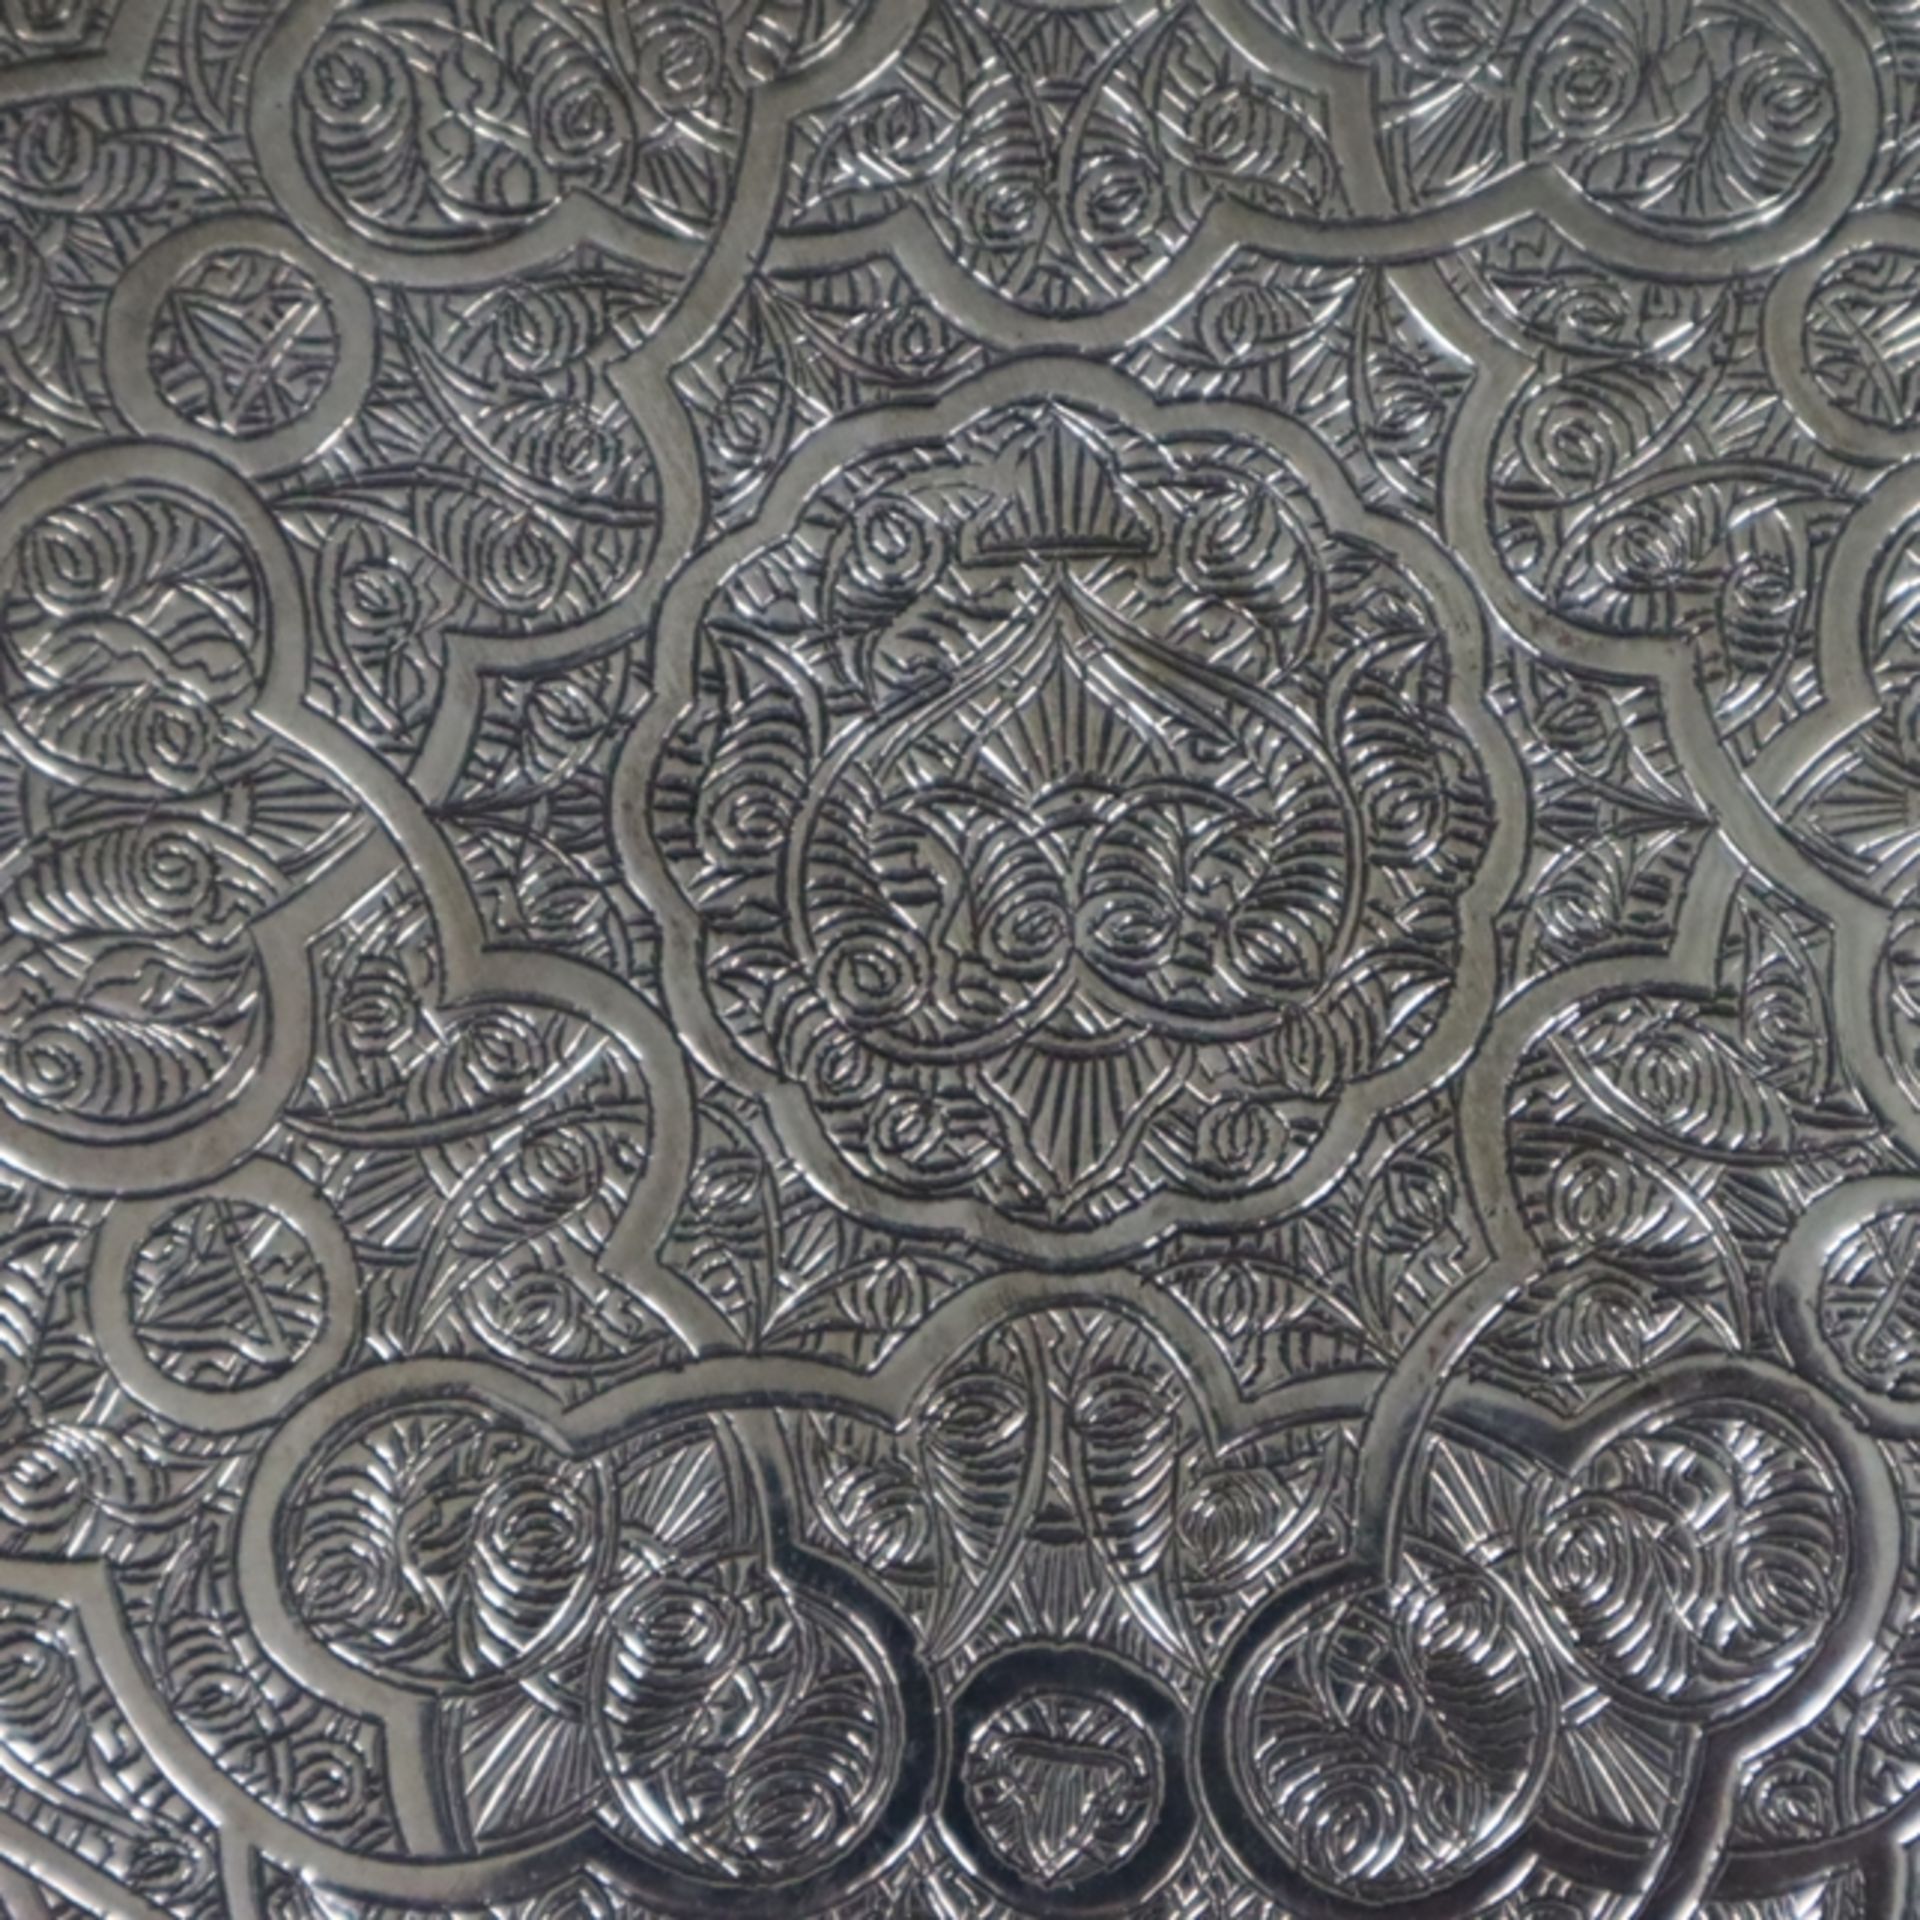 Zierteller - Ägypten, Silber, auf der Unterseite gepunzt mit ägyptischer Beschaumarke mit Lotosblum - Bild 3 aus 7